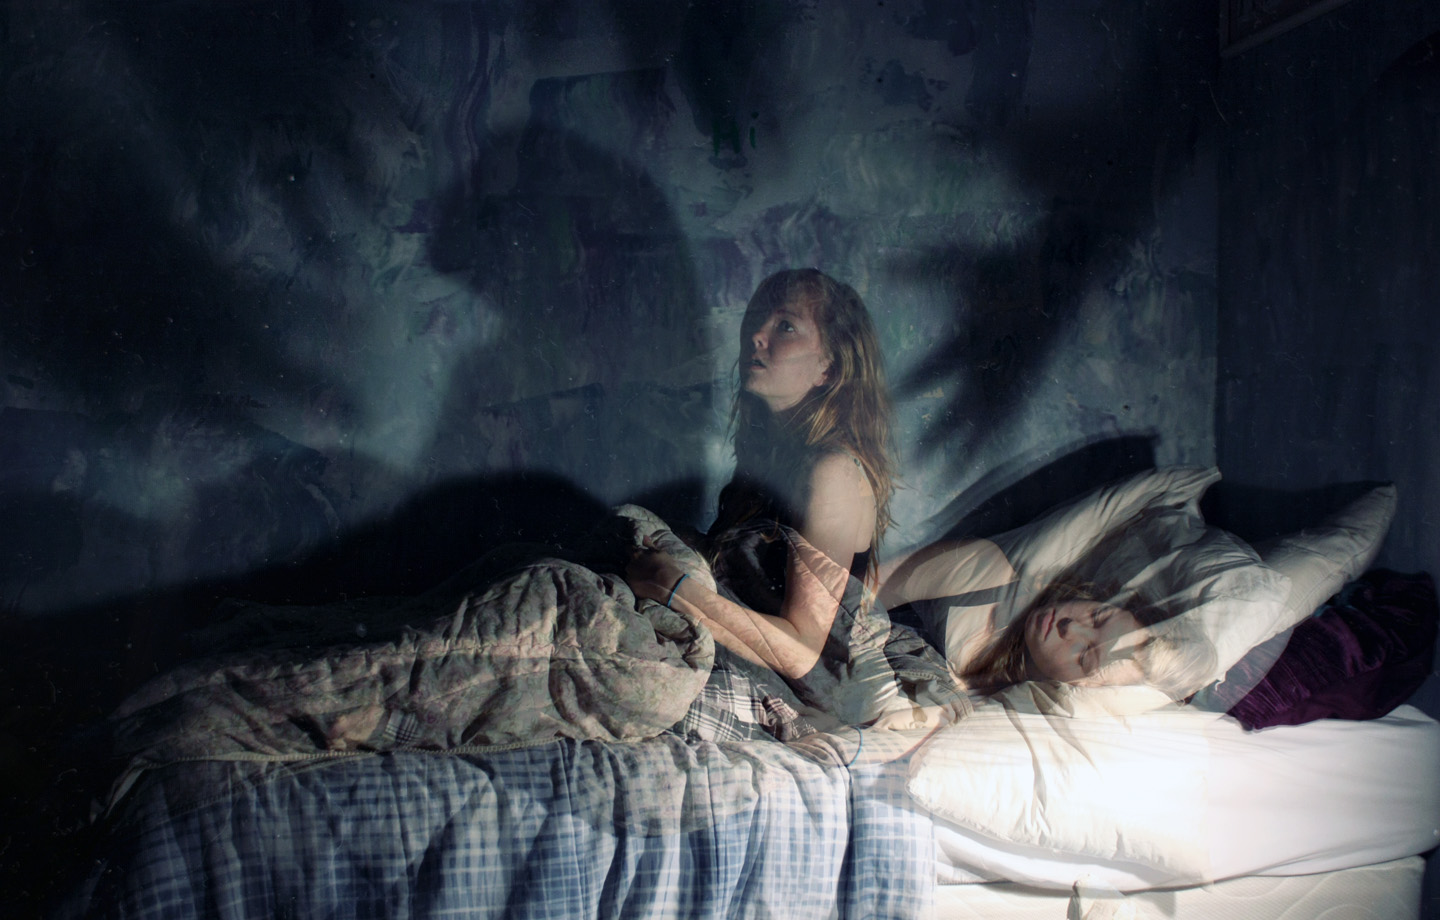 Кошмары каждый день. Ночница Сонный паралич. Ночные кошмары и фантастические видения" 2009 год.